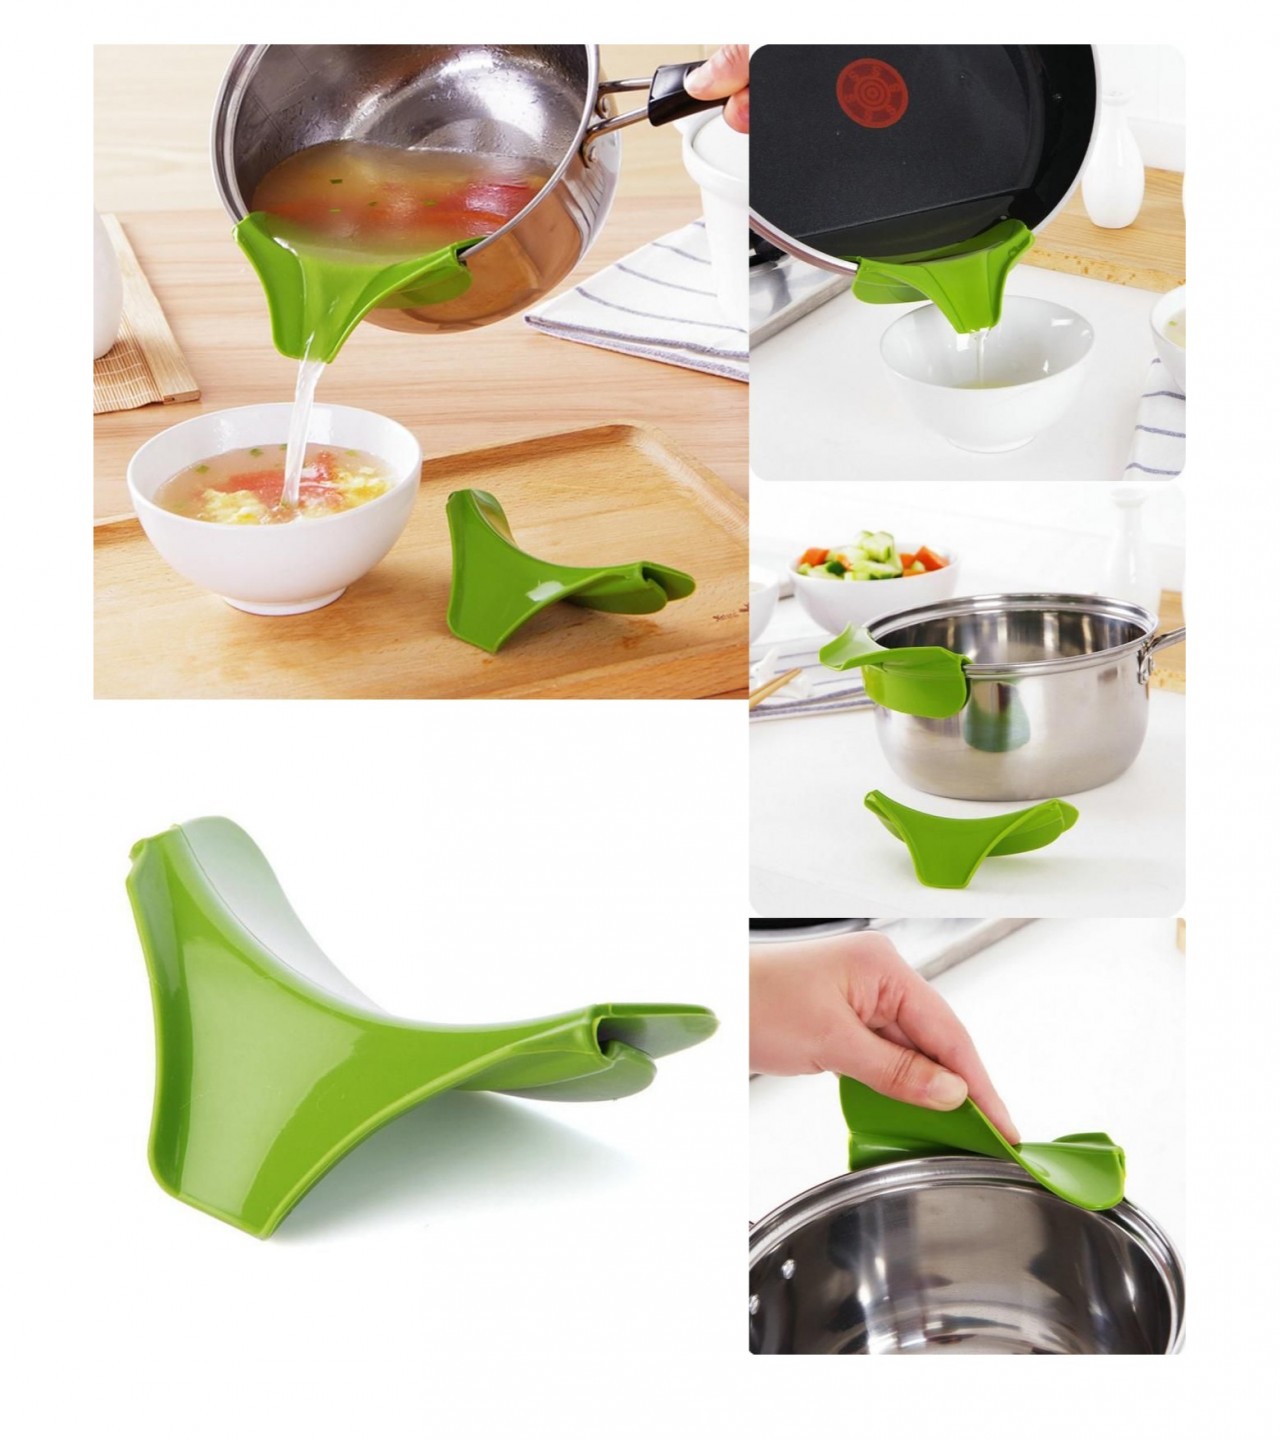 Kitchen Funnel Gadget Silicone Pour Spout Slip On Pour For Bowls Pans Pots